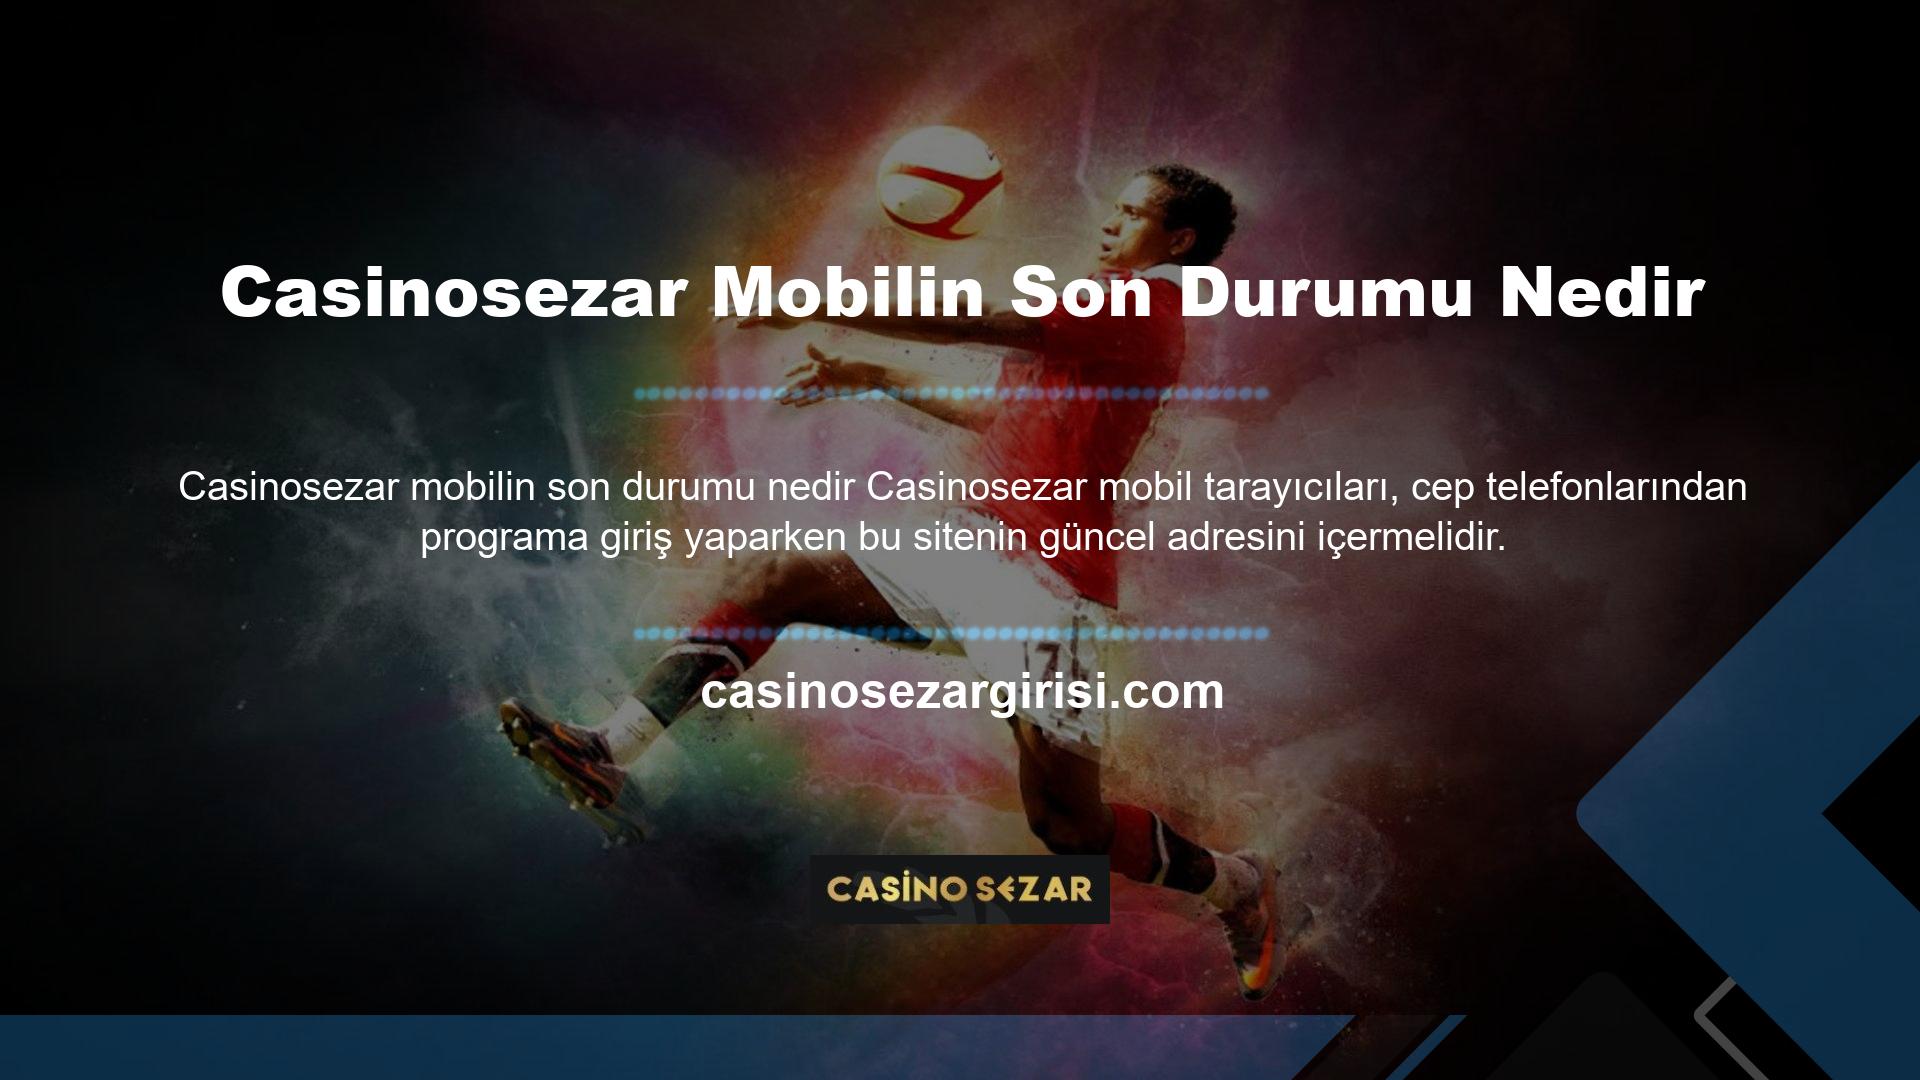 Adres bilgilerindeki değişiklik ile Casinosezar mobil bağlantısının ana sayfasına ulaşmak oldukça basittir